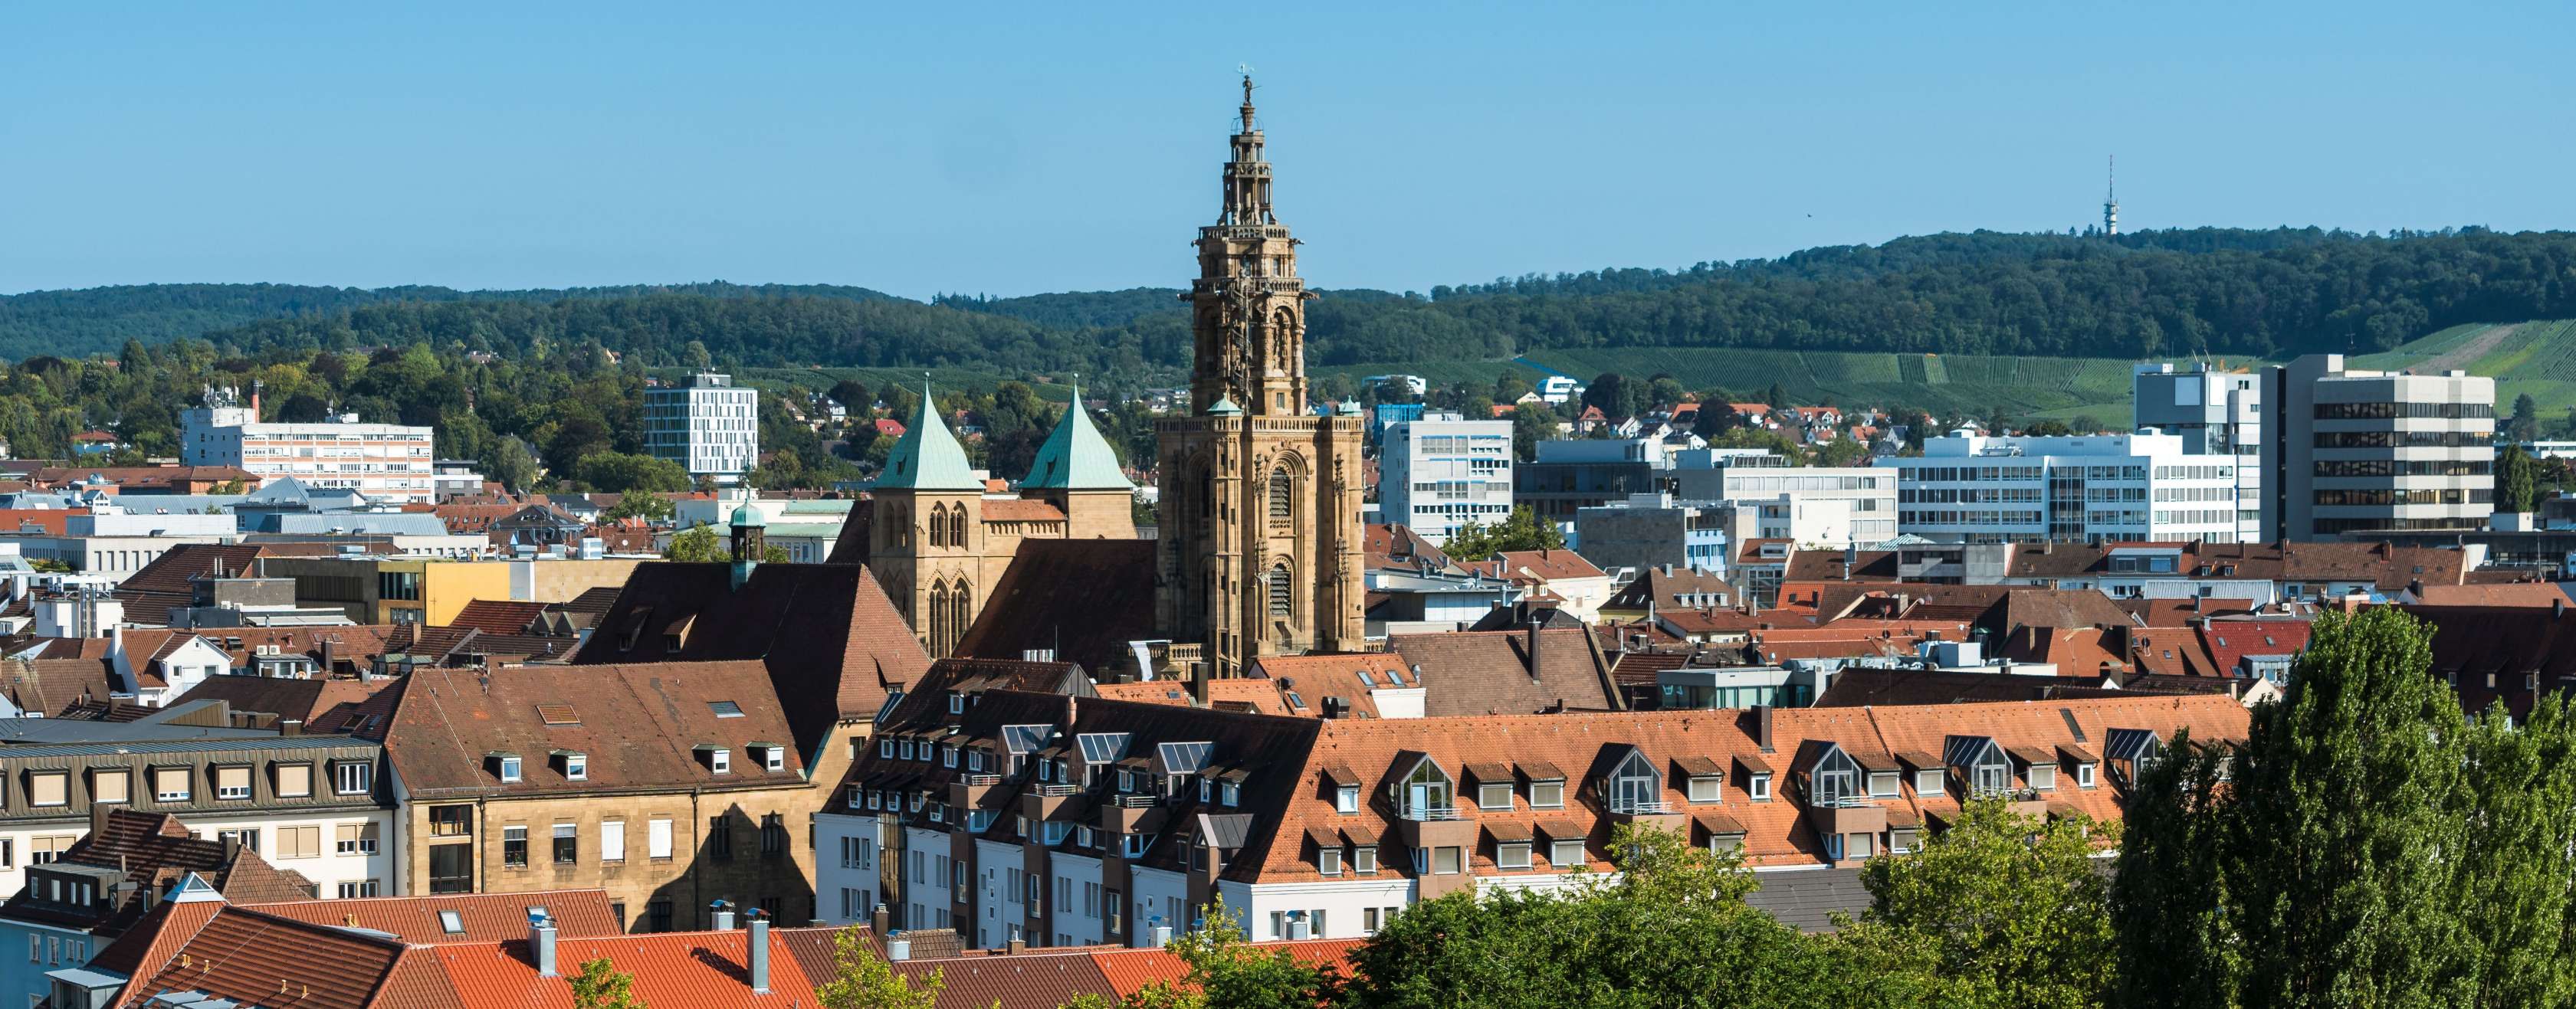 Versicherung in Heilbronn: Kontaktieren Sie unsere Experten und vereinbaren Sie Ihren persönlichen Beratungstermin 